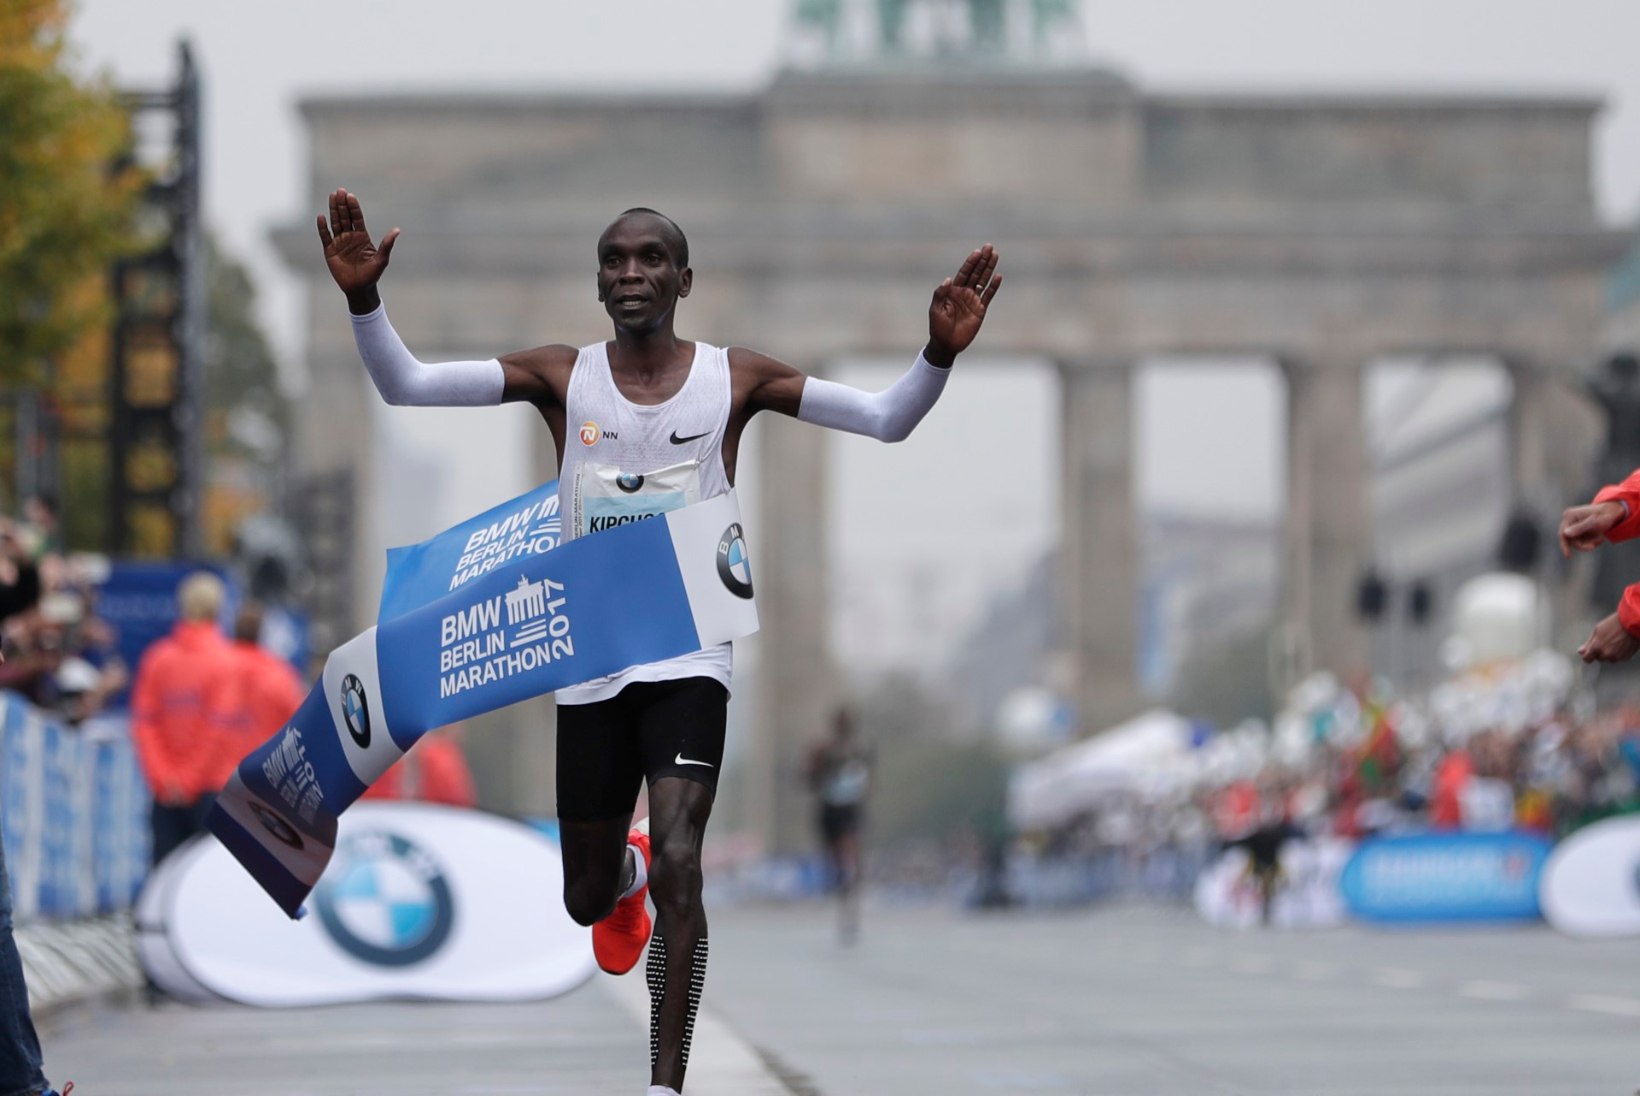 Berliini maratonil sündis Eesti hooaja tippmark, maailmarekord jäi napilt nägemata